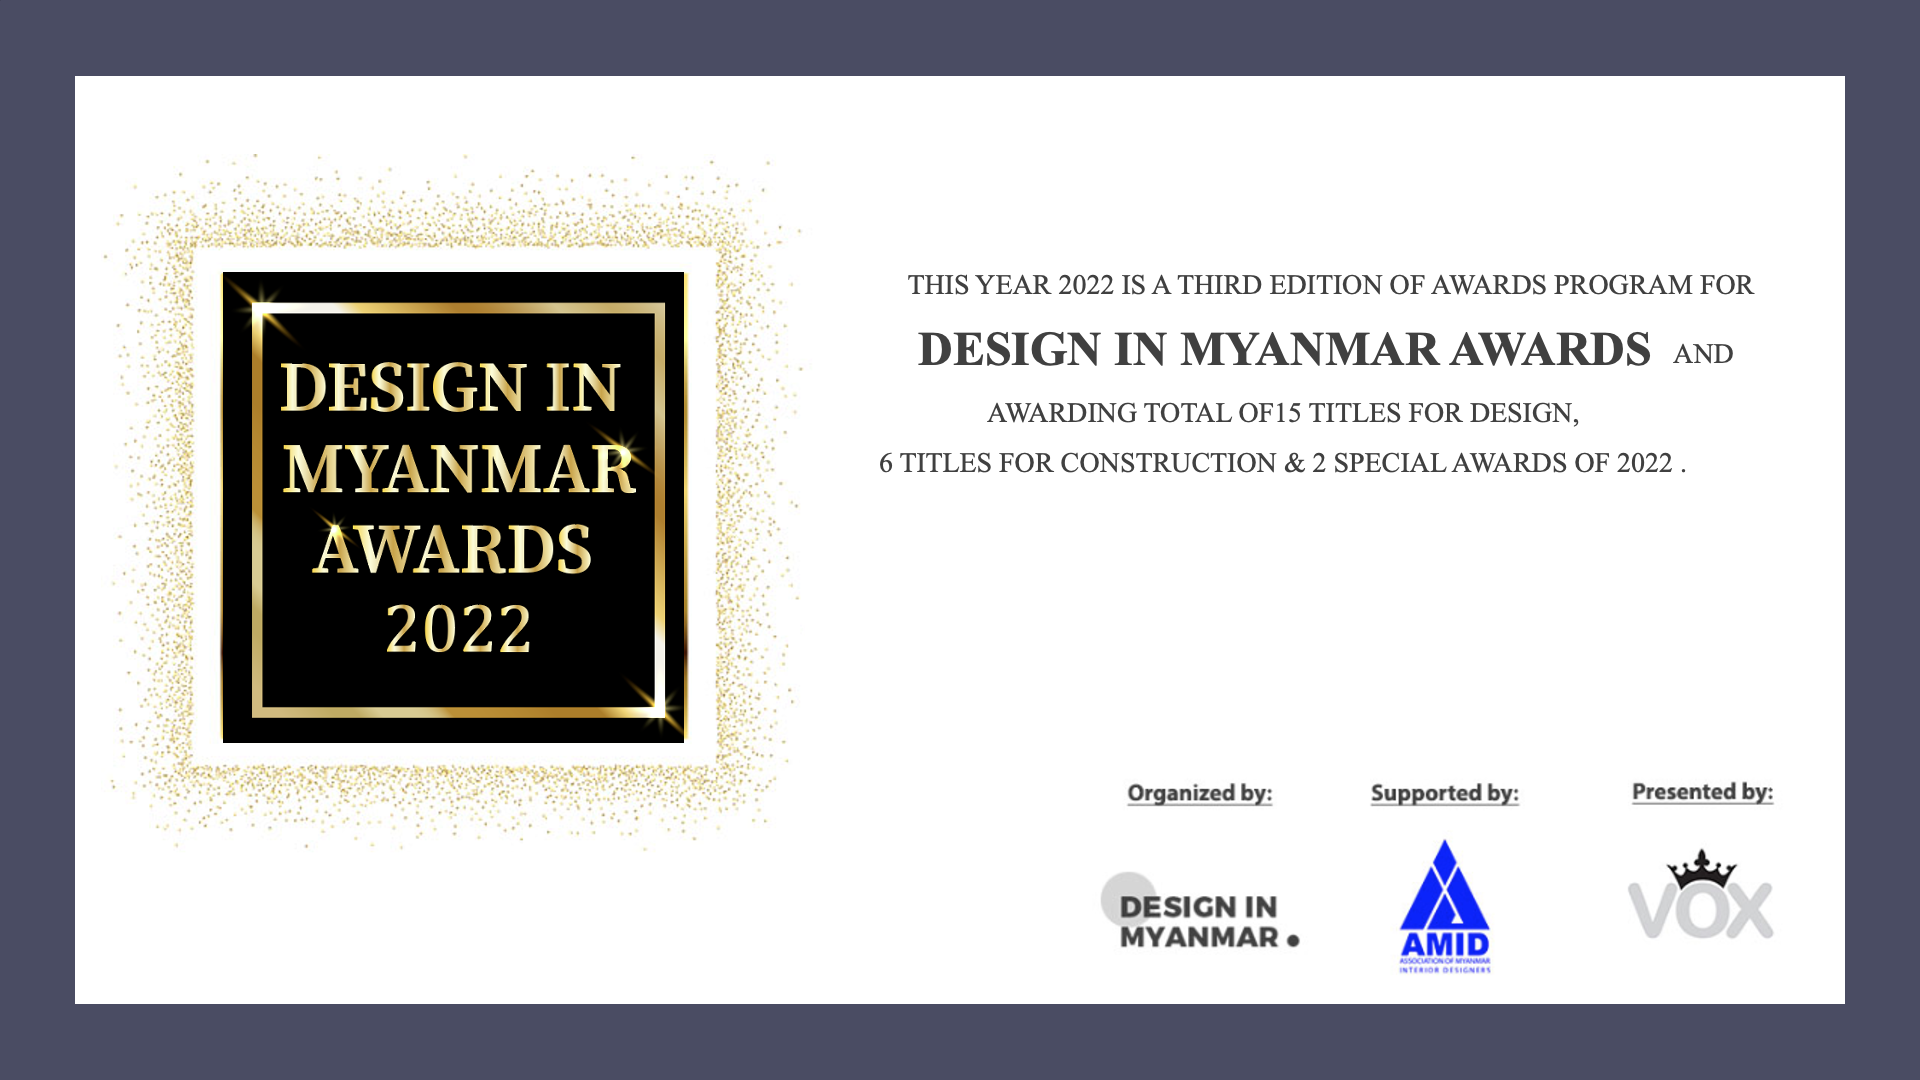 DESIGN IN MYANMAR AWARDS 2022